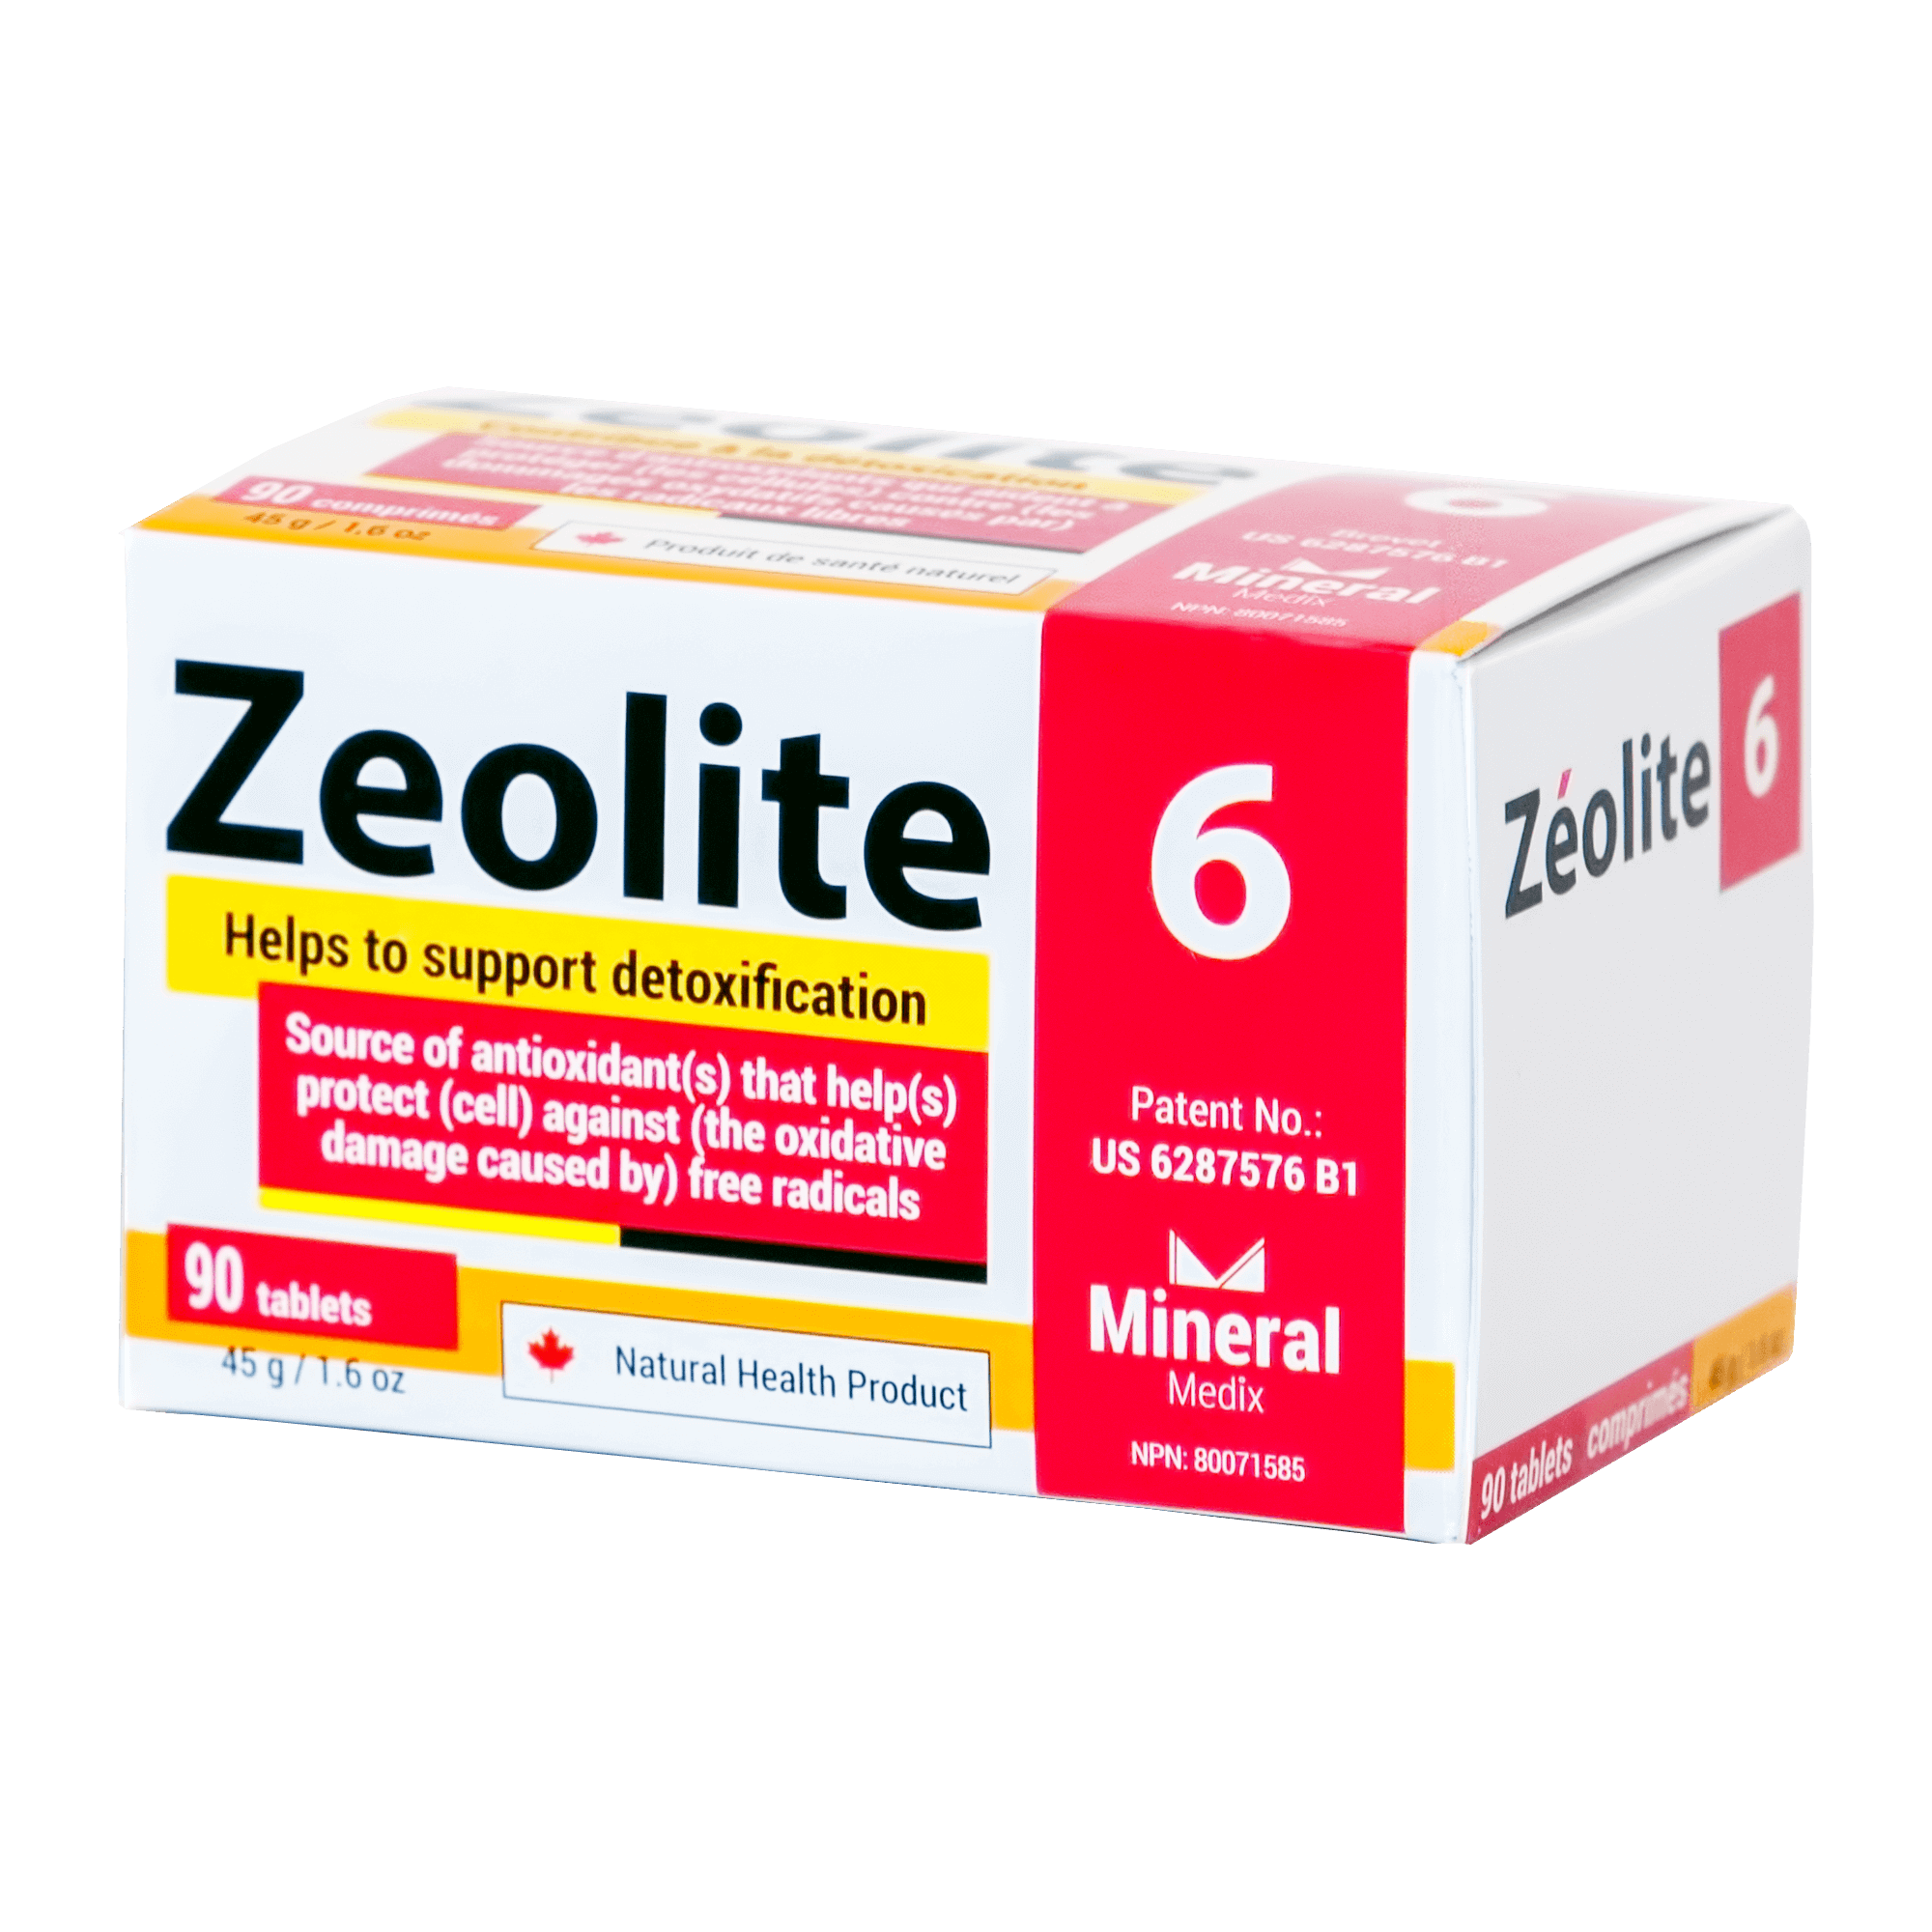 zeolite6